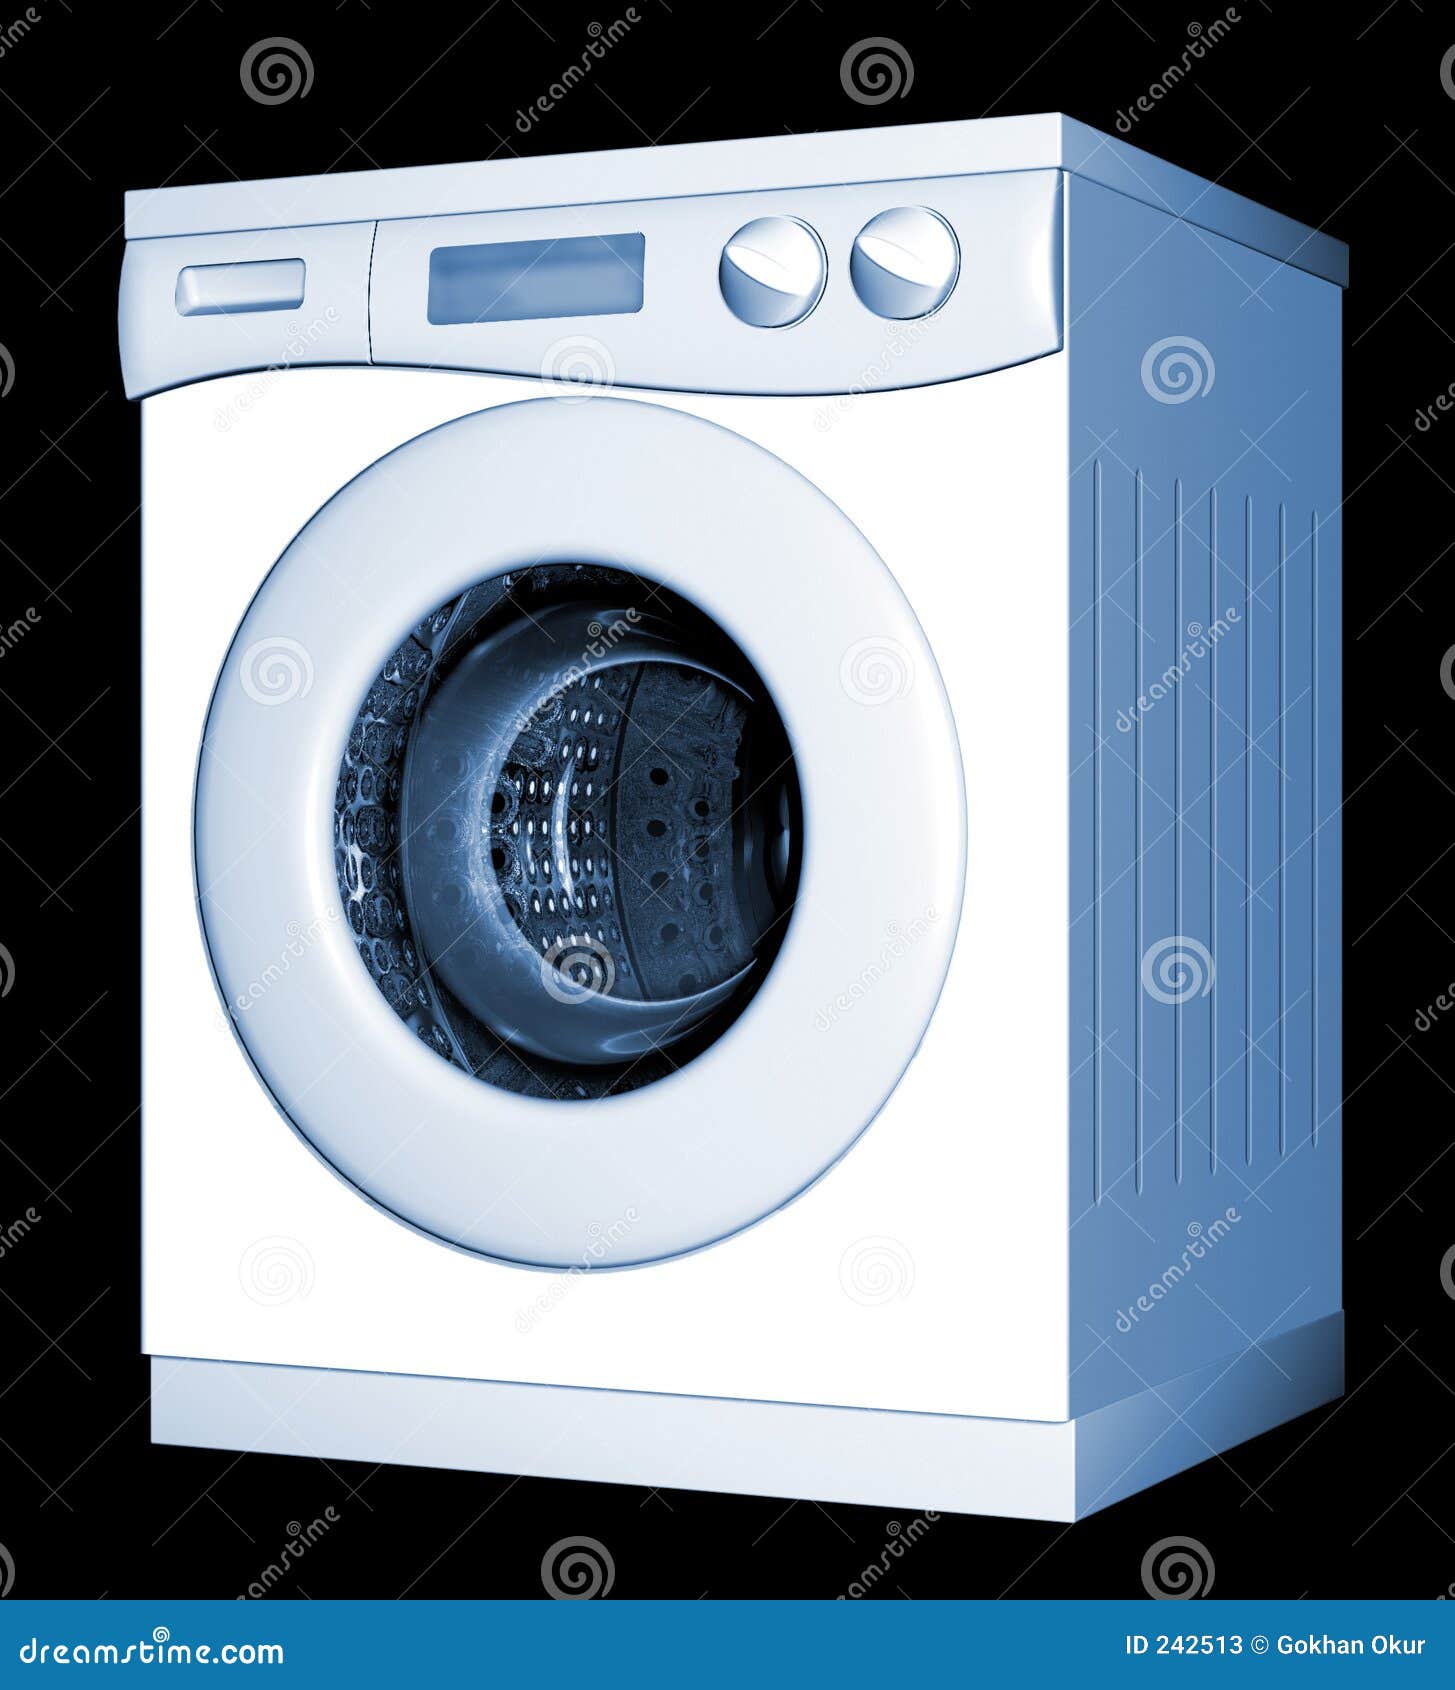 washing-machine-242513.jpg